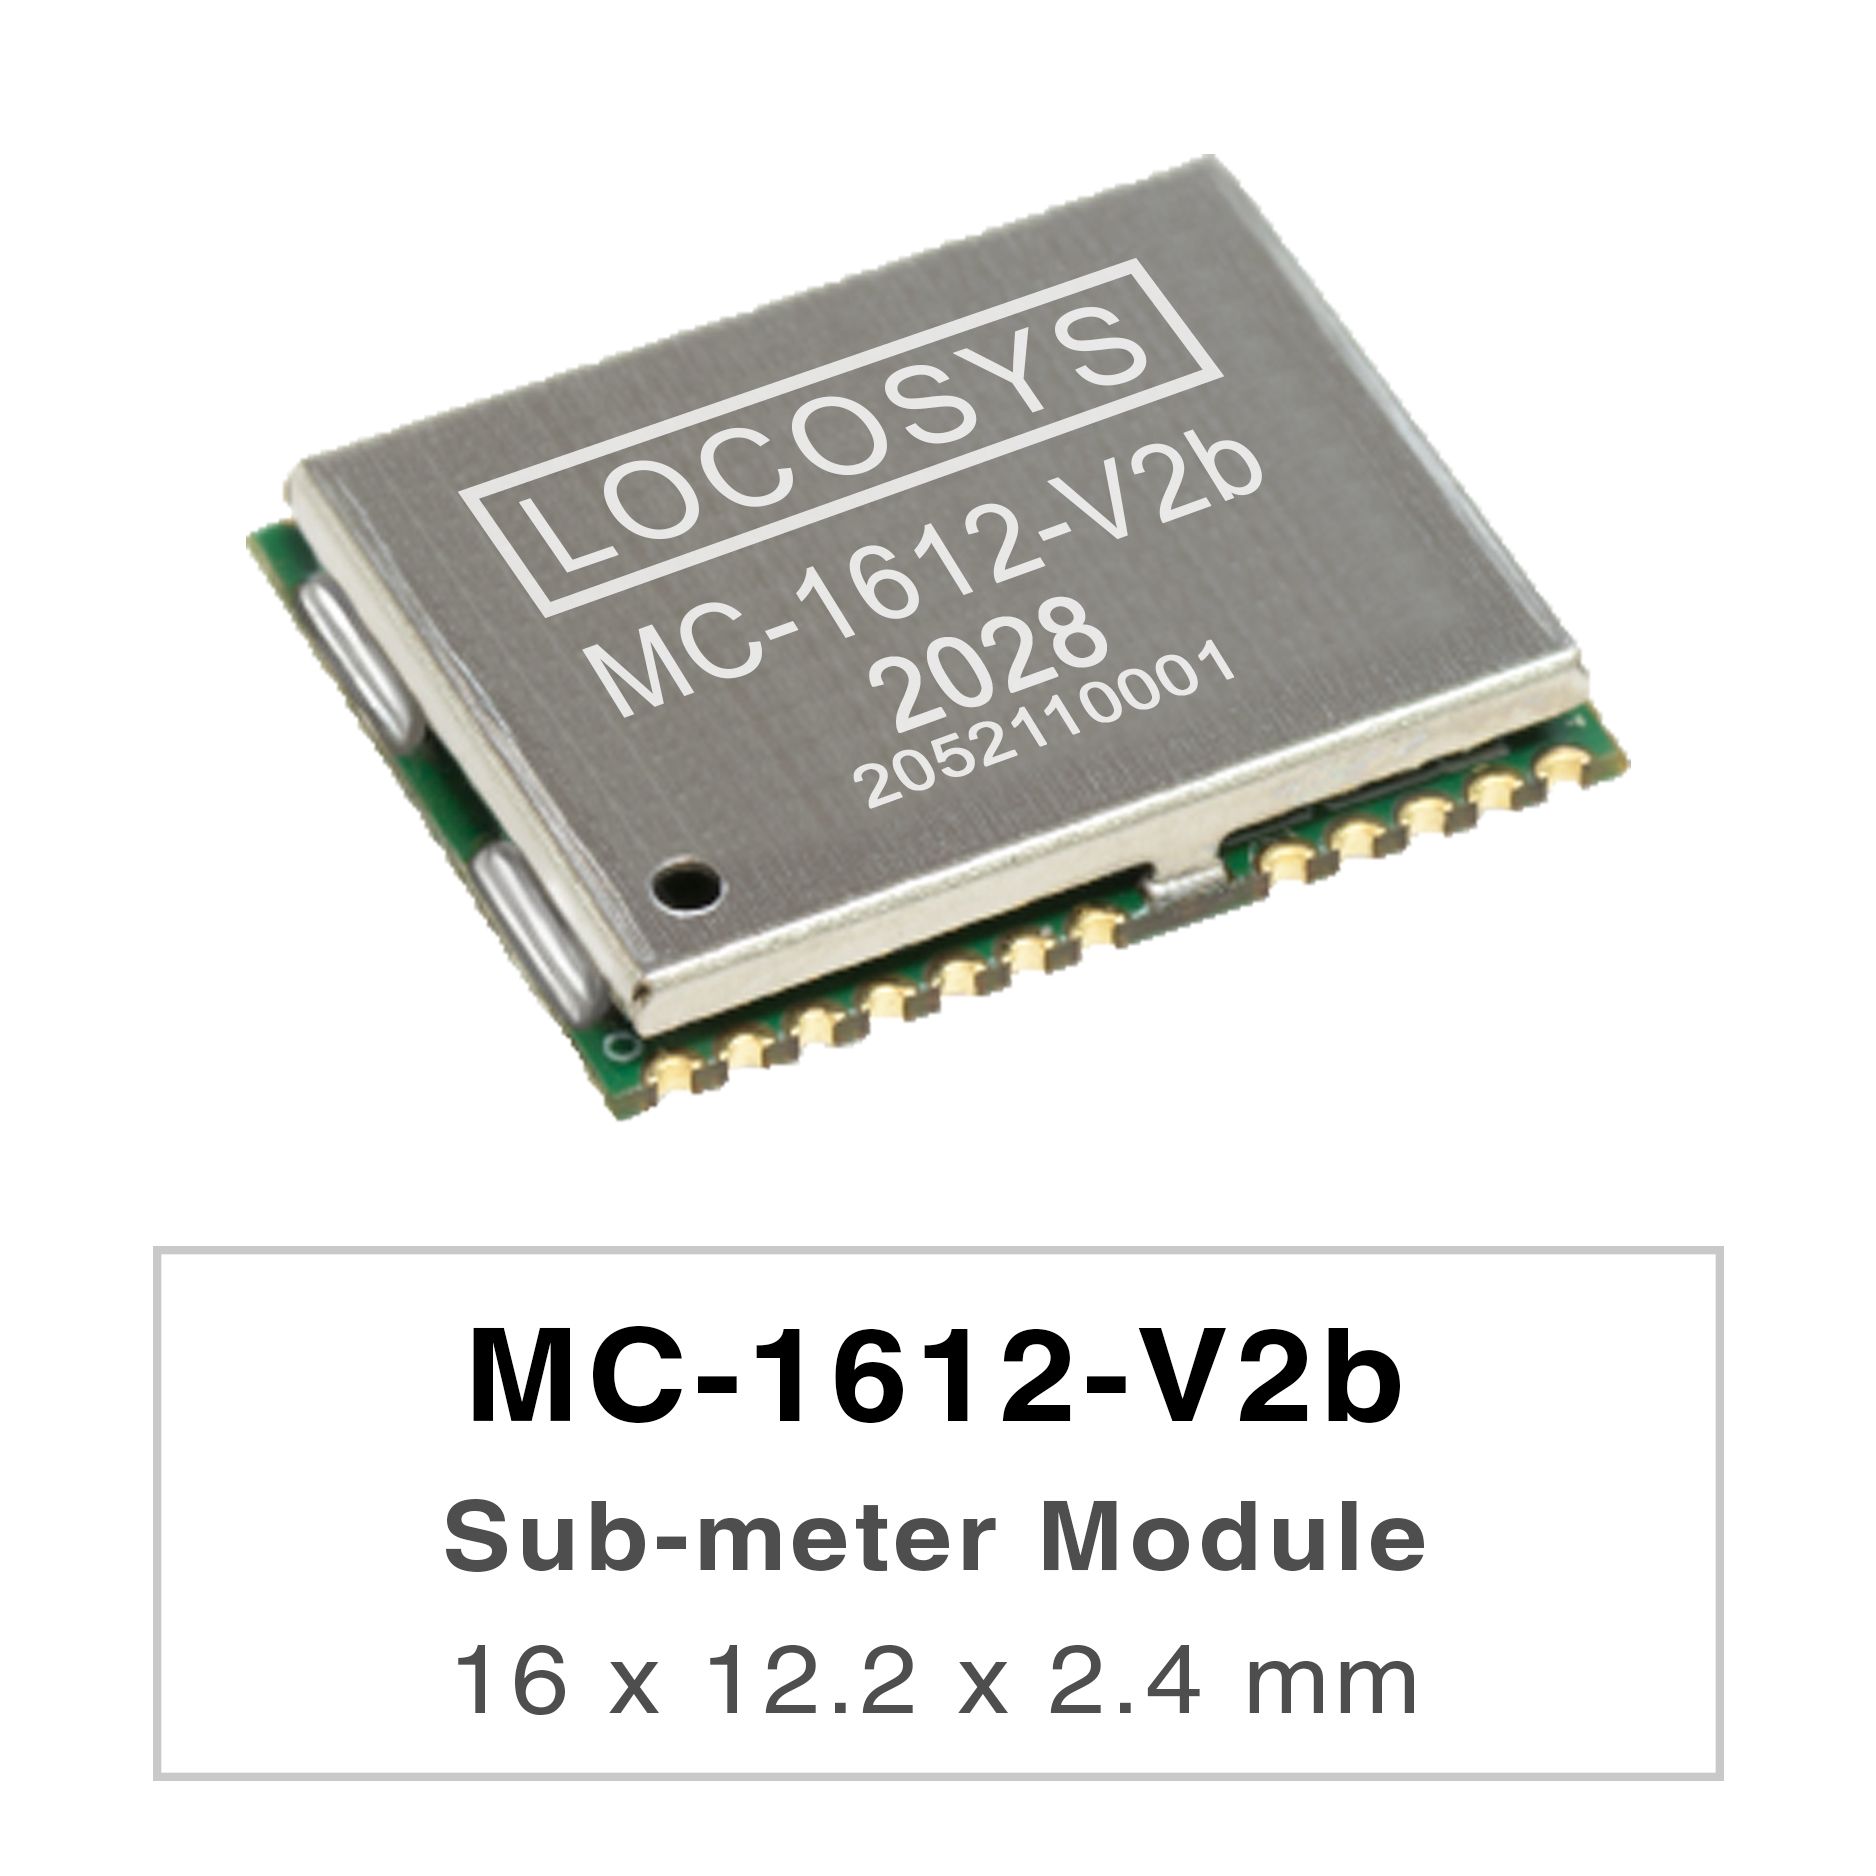 Die LOCOSYS MC-1612-Vxx-Serie sind Hochleistungs-Dualband-GNSS-Positionierungsmodule, die
<br />in der Lage sind, alle globalen zivilen Navigationssysteme zu verfolgen. Sie verwenden einen 12-nm-Prozess und integrieren eine effiziente
<br />Energieverwaltungsarchitektur, um einen geringen Stromverbrauch und eine hohe Empfindlichkeit zu erzielen.